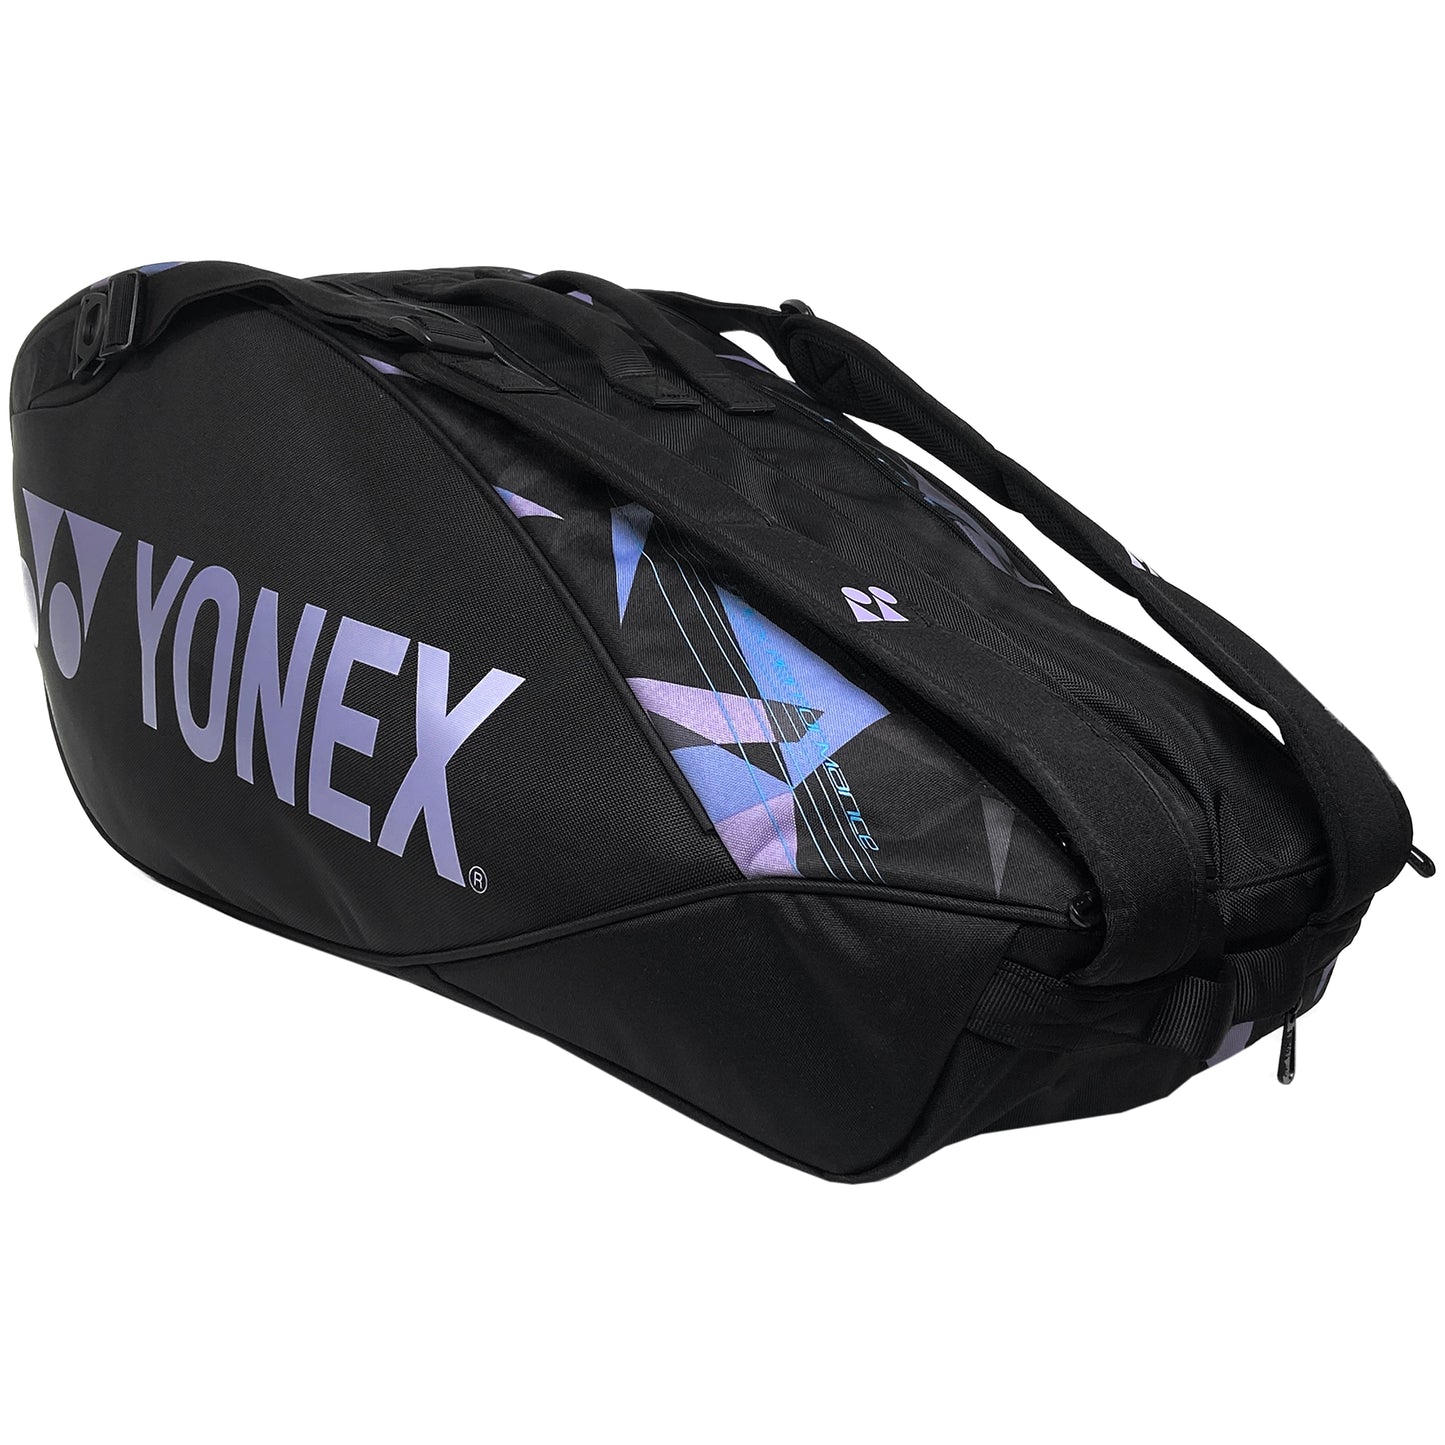 Yonex 6pk Pro Racquet Bag (92226EX) Mist Purple